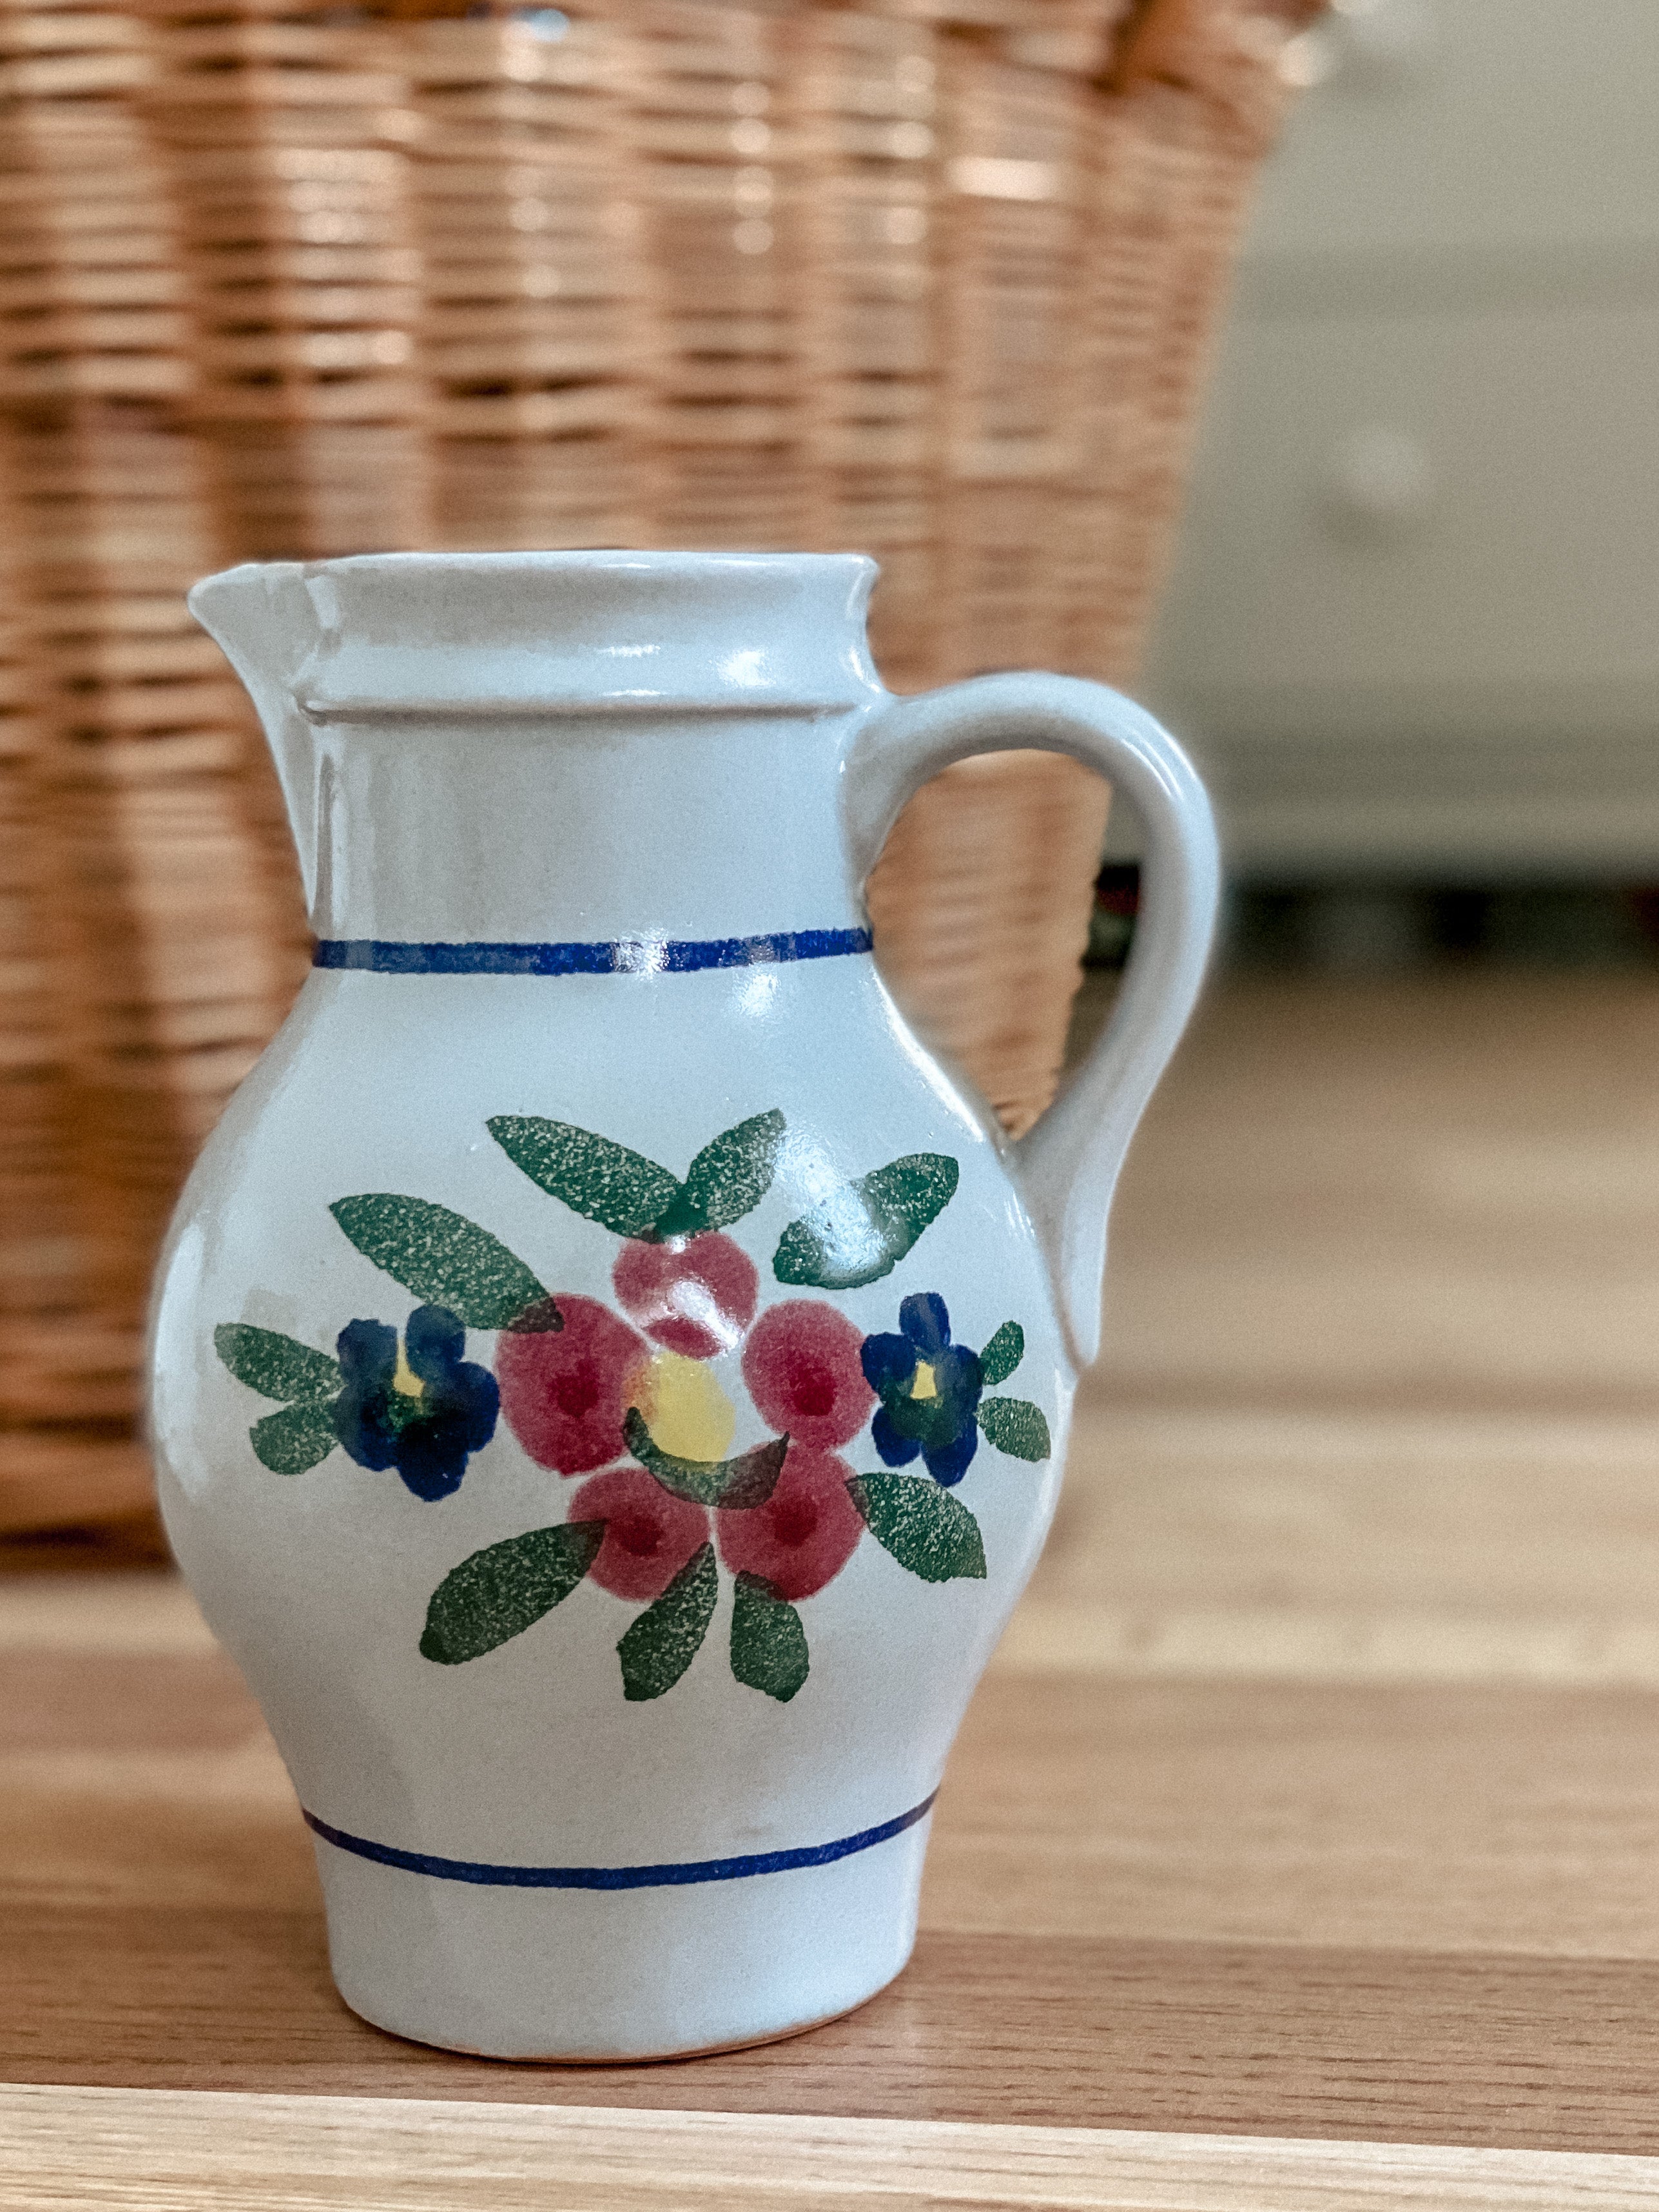 Small flower vase